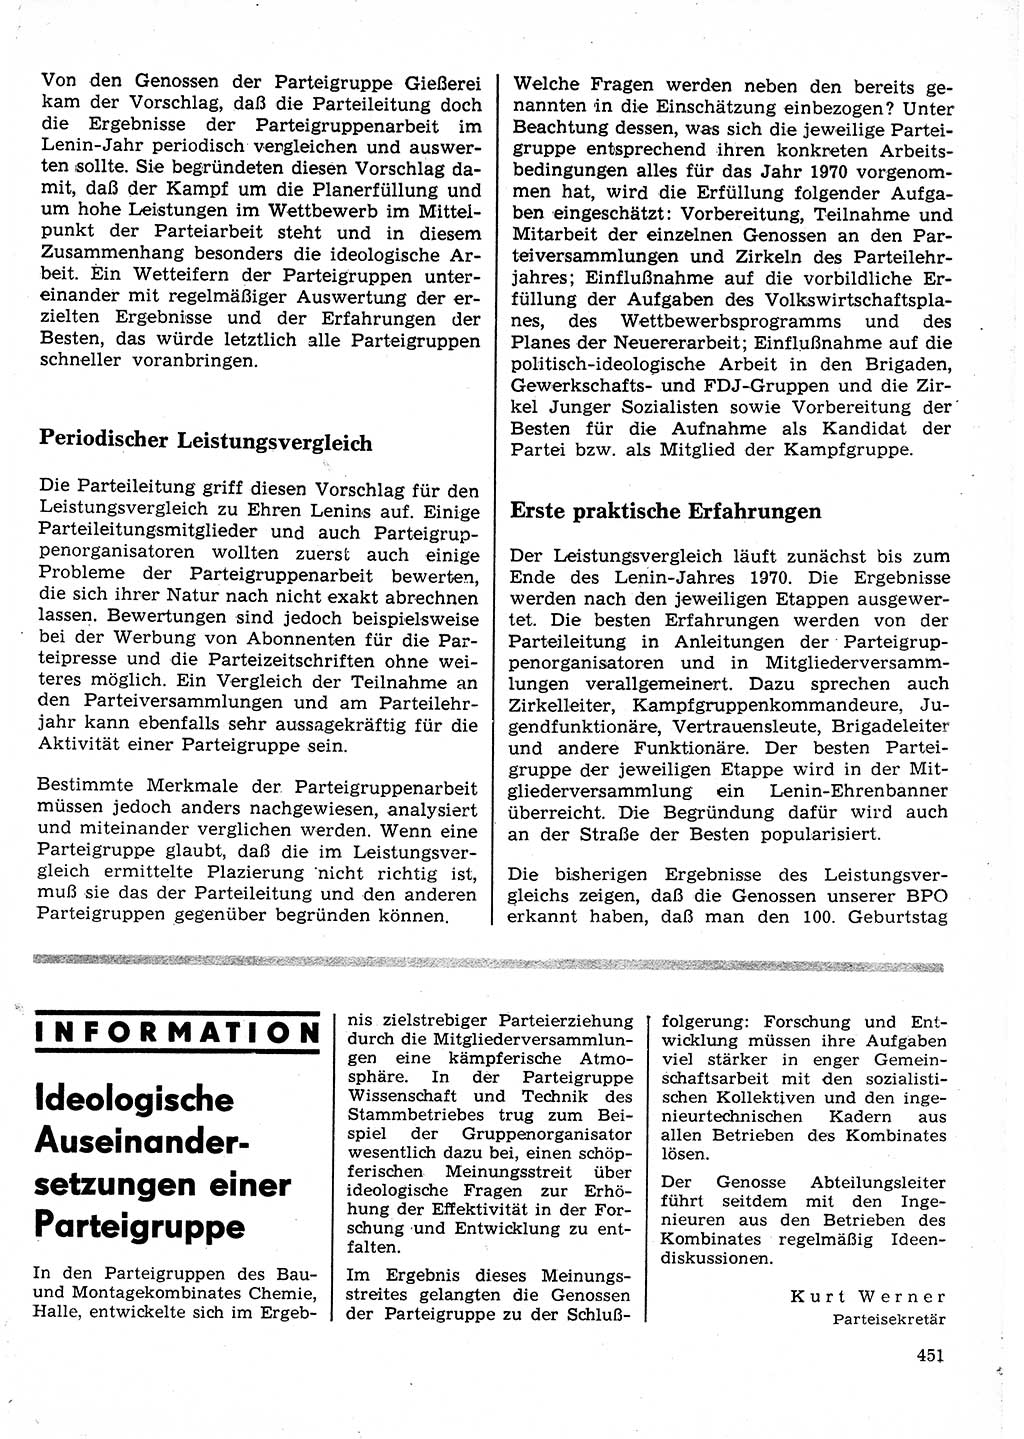 Neuer Weg (NW), Organ des Zentralkomitees (ZK) der SED (Sozialistische Einheitspartei Deutschlands) für Fragen des Parteilebens, 25. Jahrgang [Deutsche Demokratische Republik (DDR)] 1970, Seite 451 (NW ZK SED DDR 1970, S. 451)